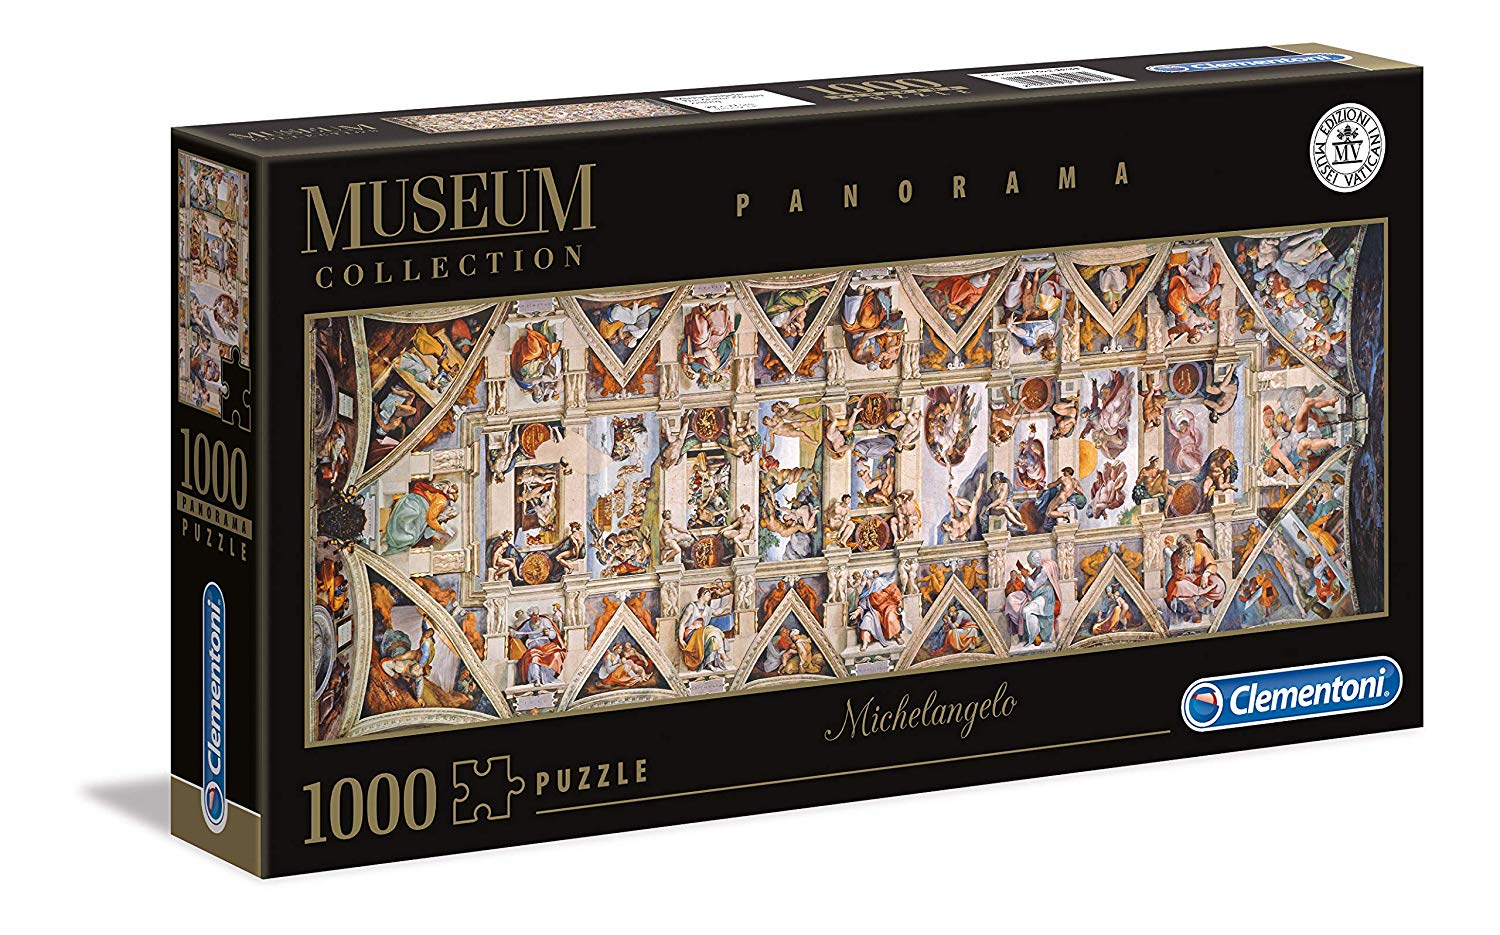 Puzzle The Sistine Chapel Ceiling Michelangelo (1000 peças)